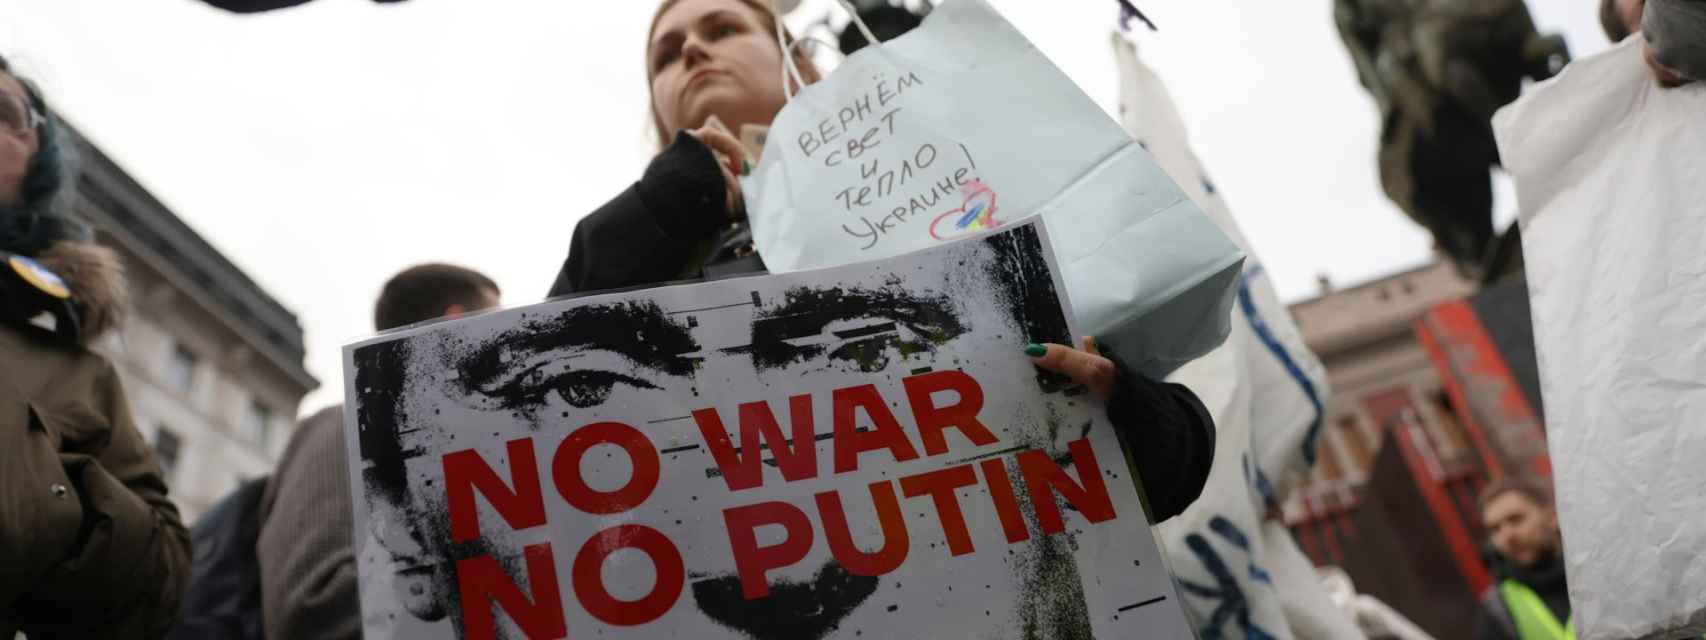 Manifestación contra Putin en Belgrado organizada por la Sociedad Democrática Rusa.